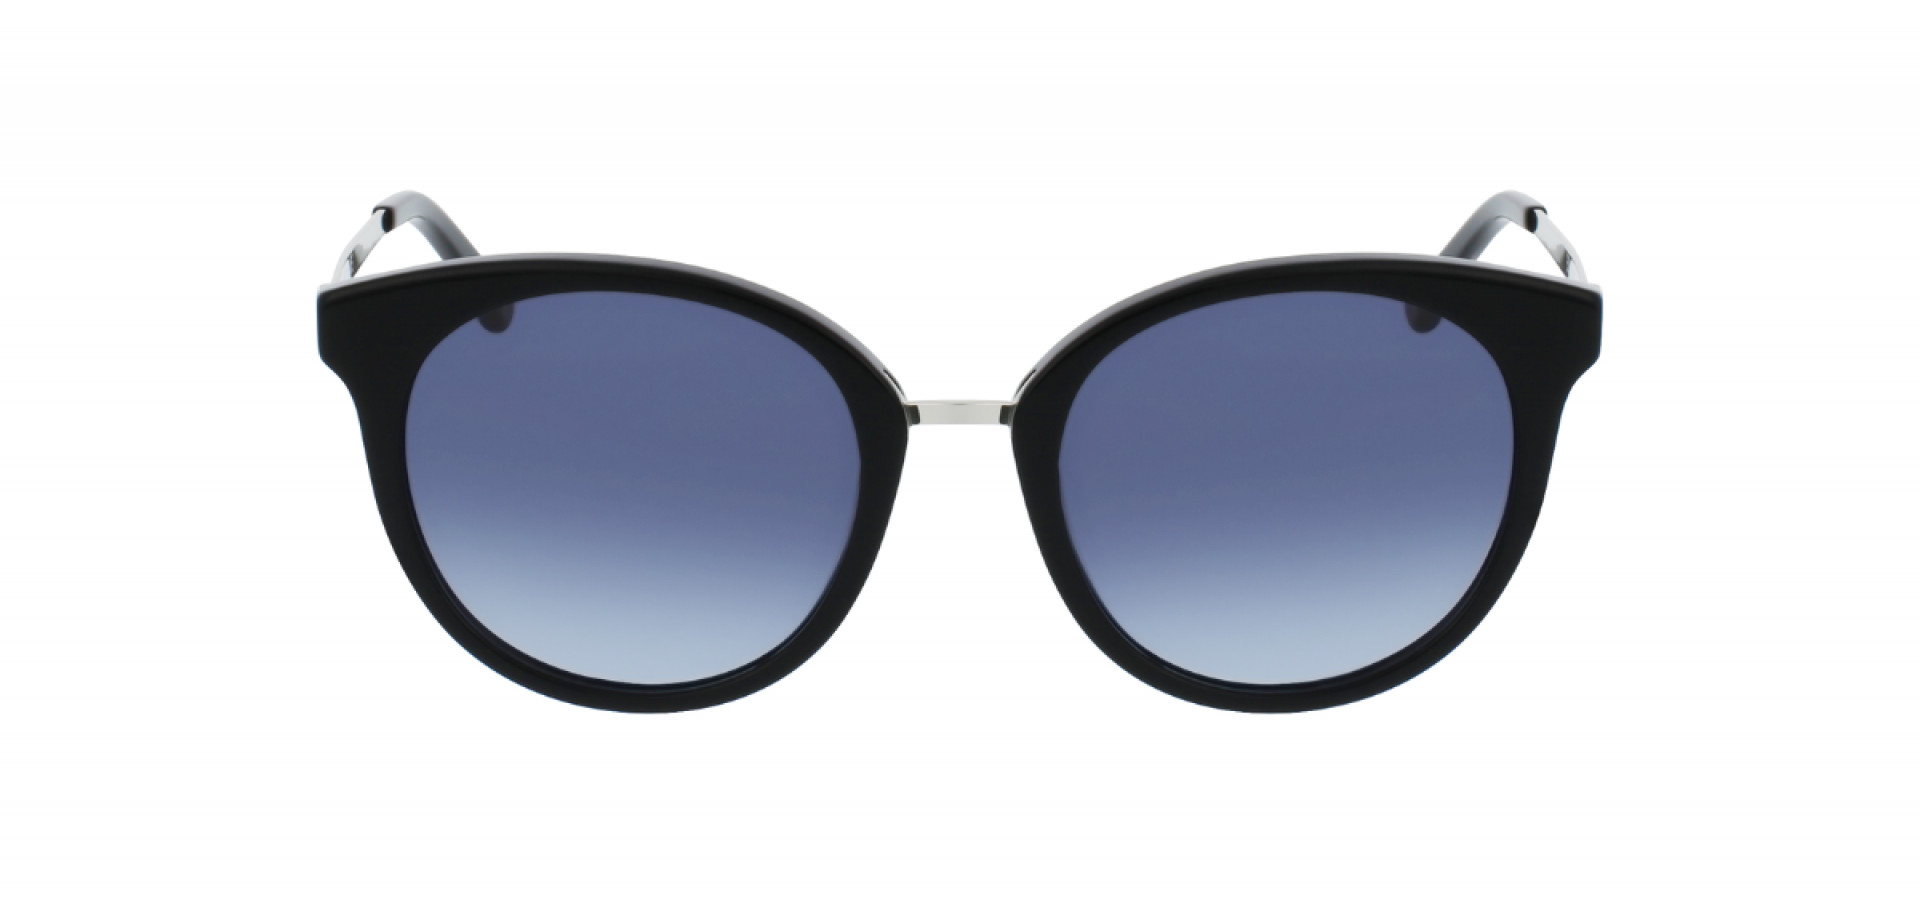 Sunčane naočale Ghetaldus GHS-W124-1: Boja: Black/Silver, Veličina: 52-20-140, Spol: ženske, Materijal: acetat, Vrsta leće: nepolarizirane